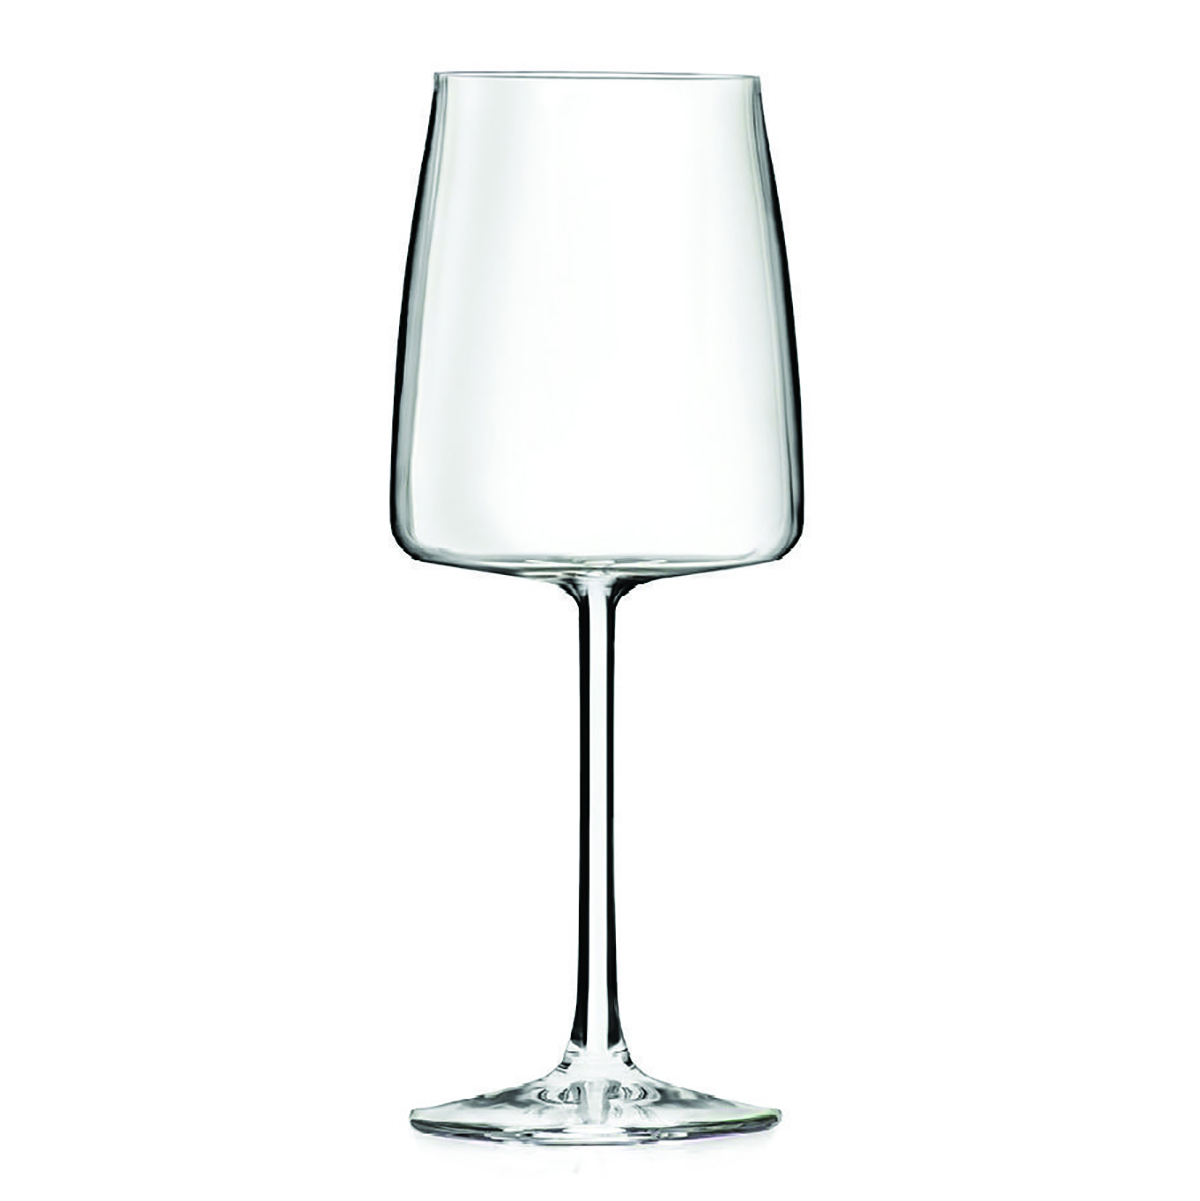 Бокал для вина RCR Essential 430 мл, хрустальное стекло, Италия